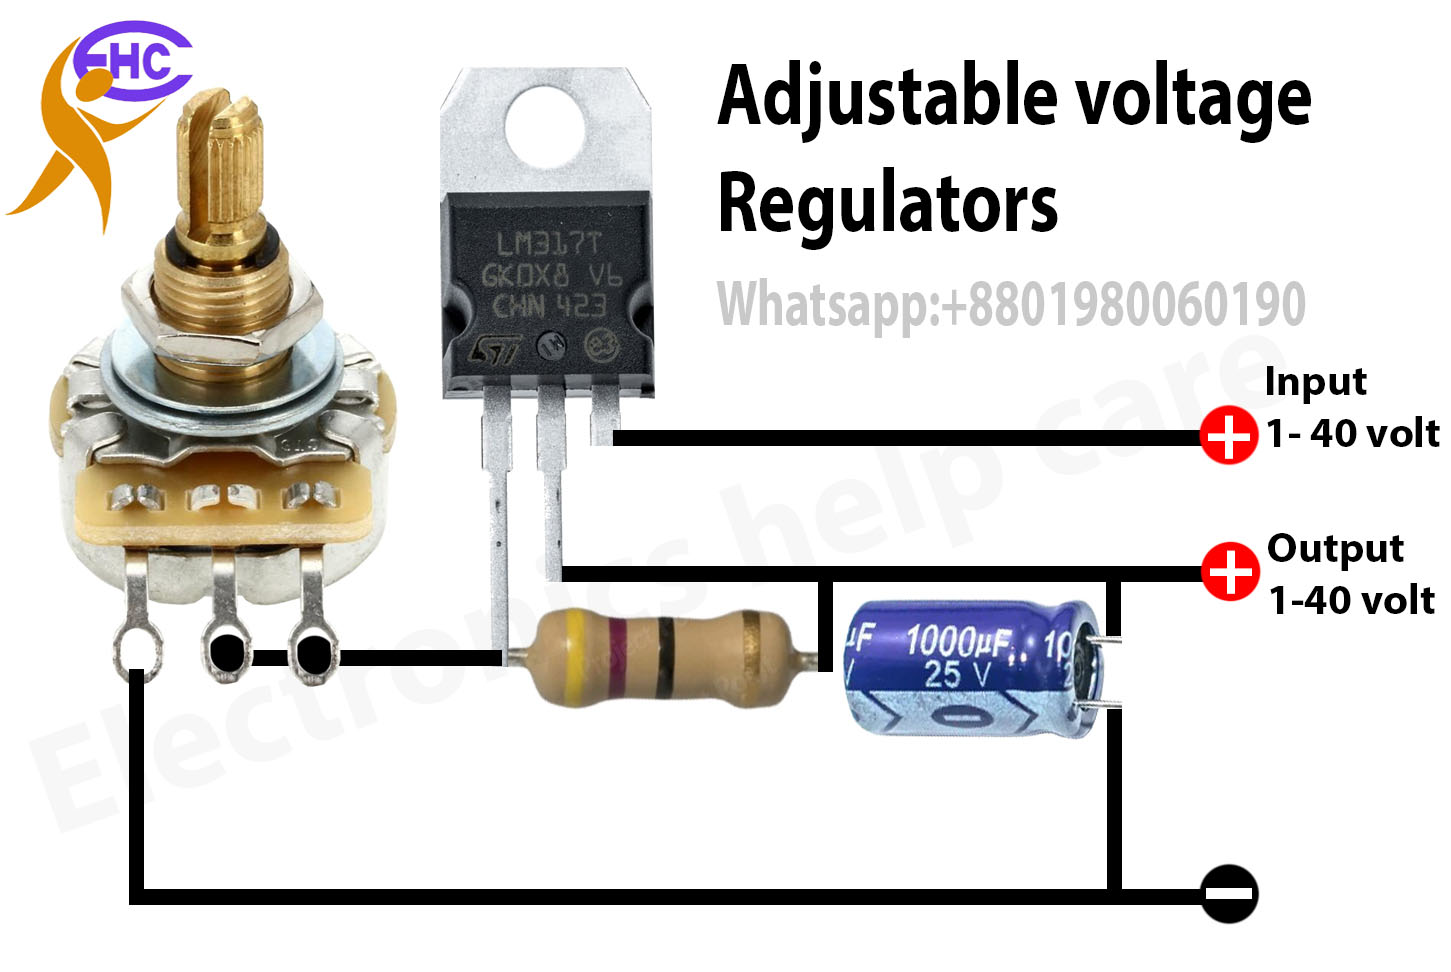 Adjustable voltage regulator using lm317